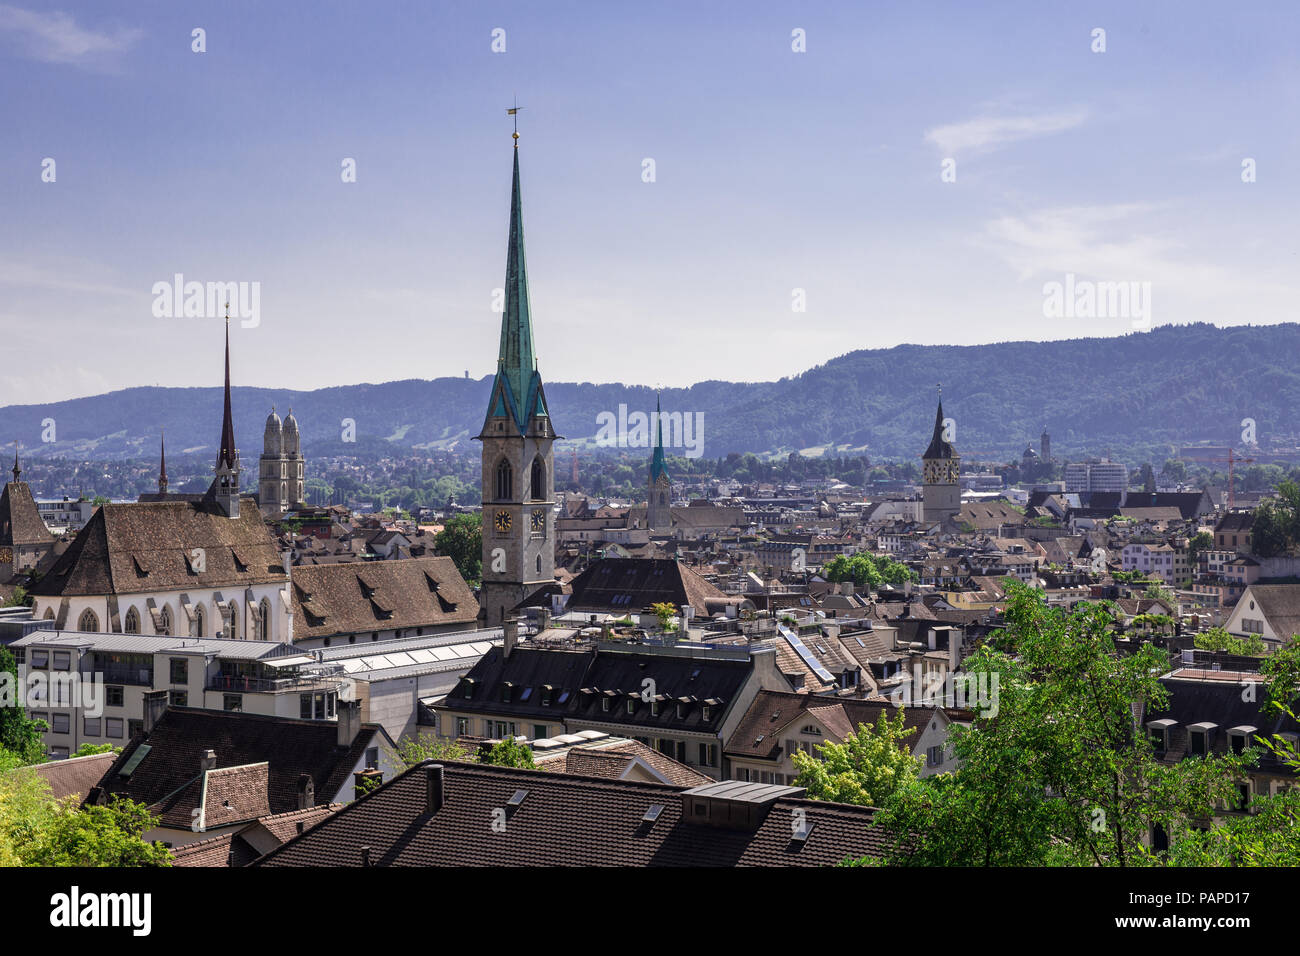 Panorama of the city of Zuerich, Switzerland Stock Photo